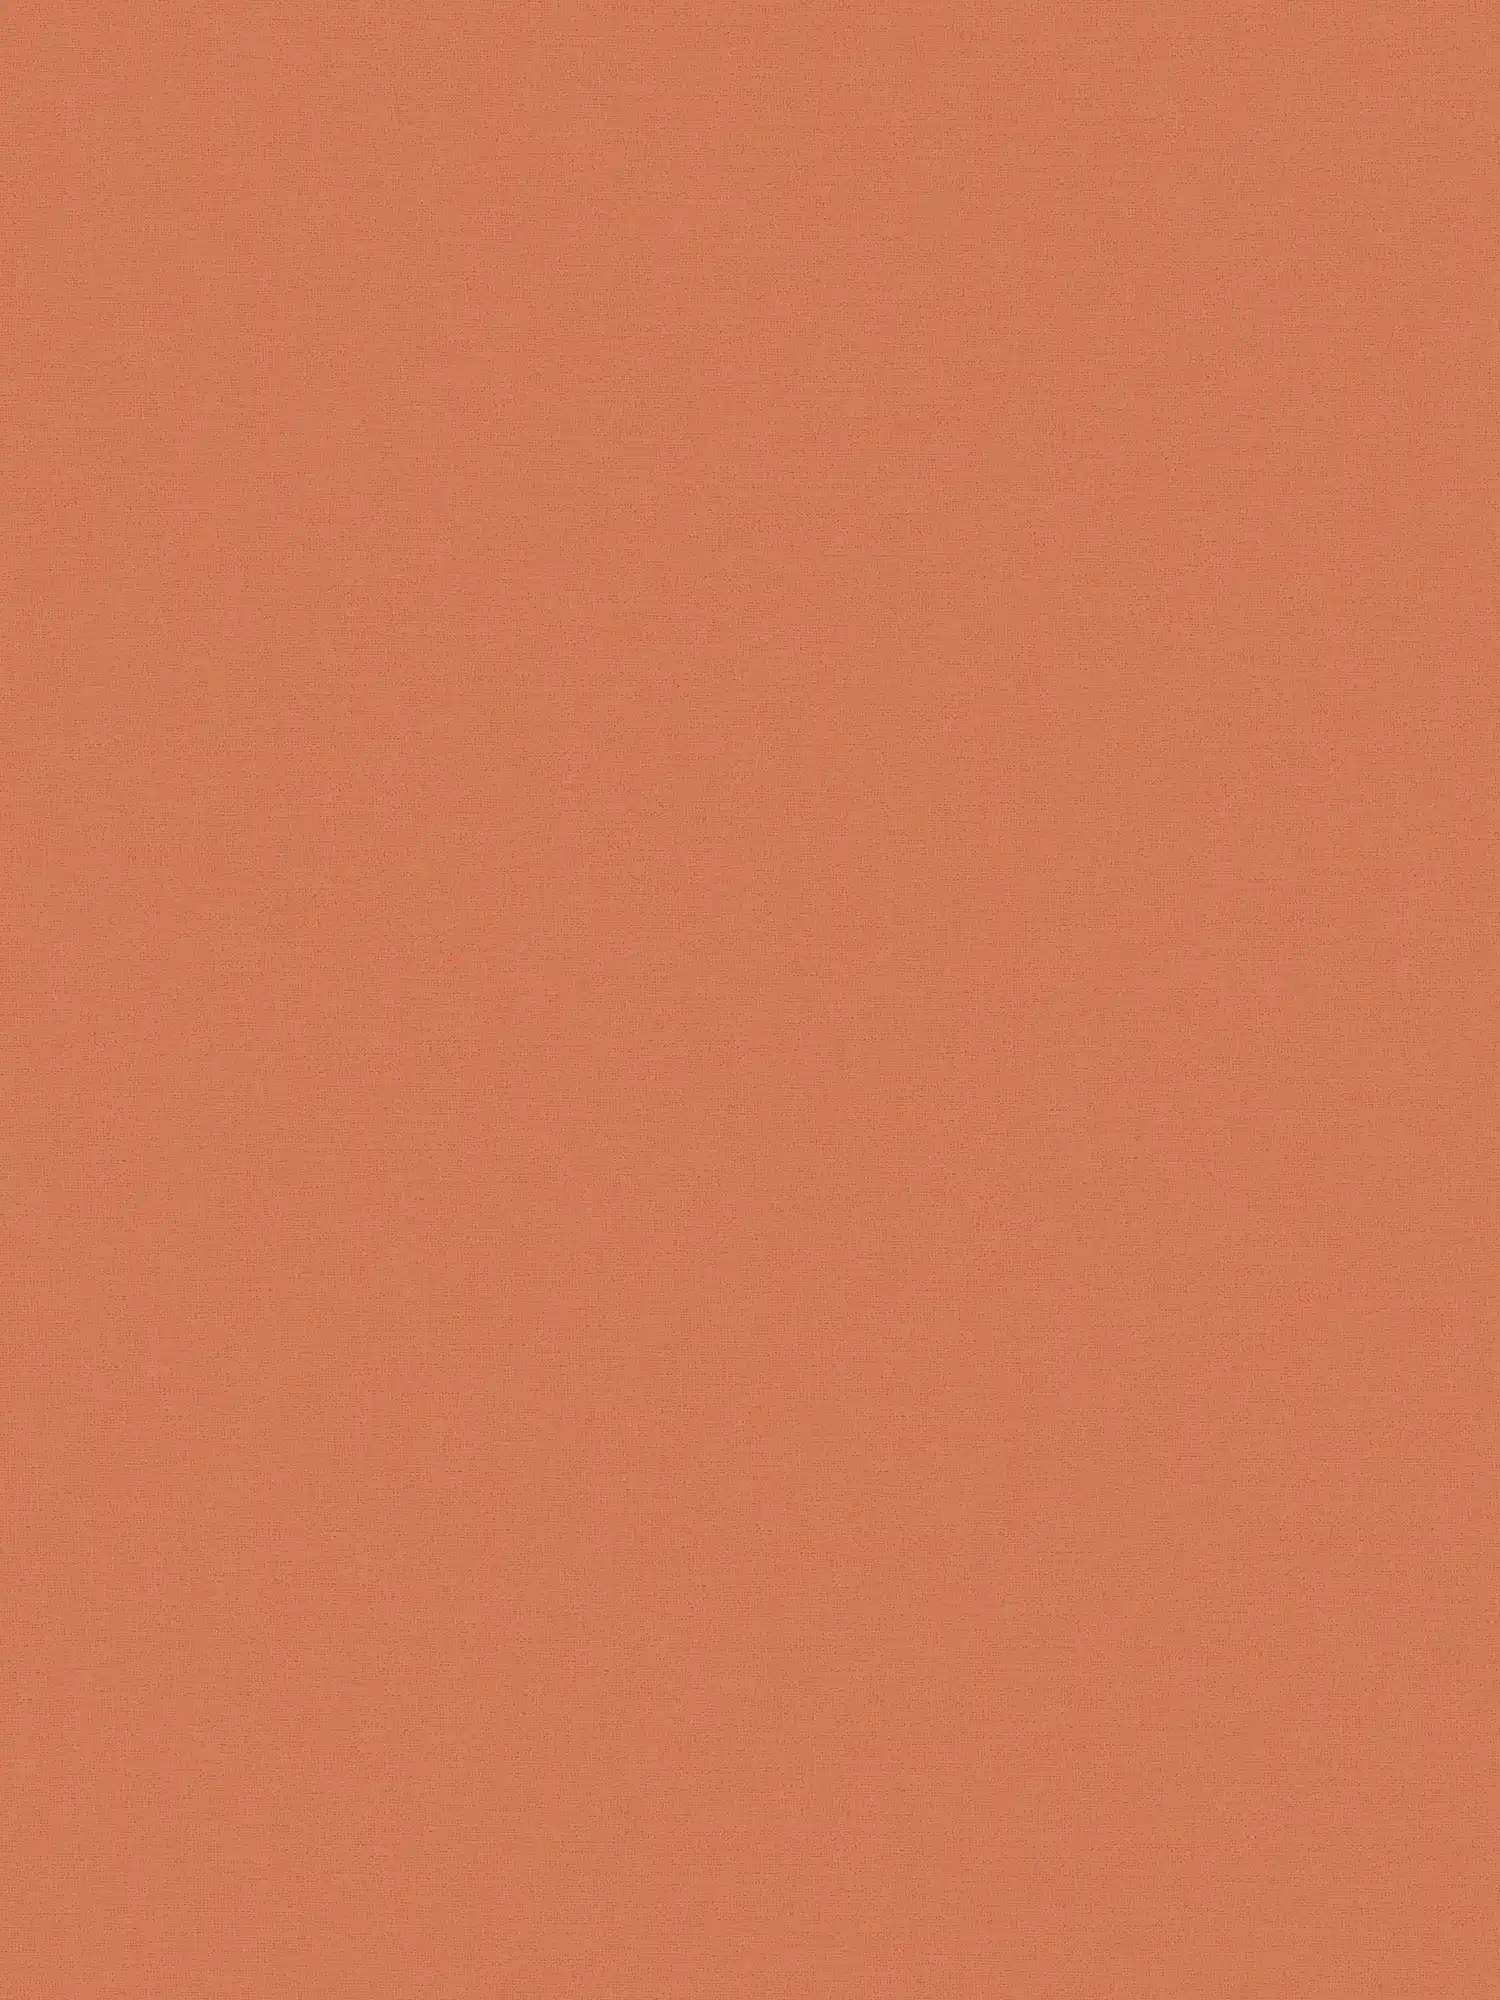 Eenheidsbehang oranje, effen & mat van MICHALSKY
